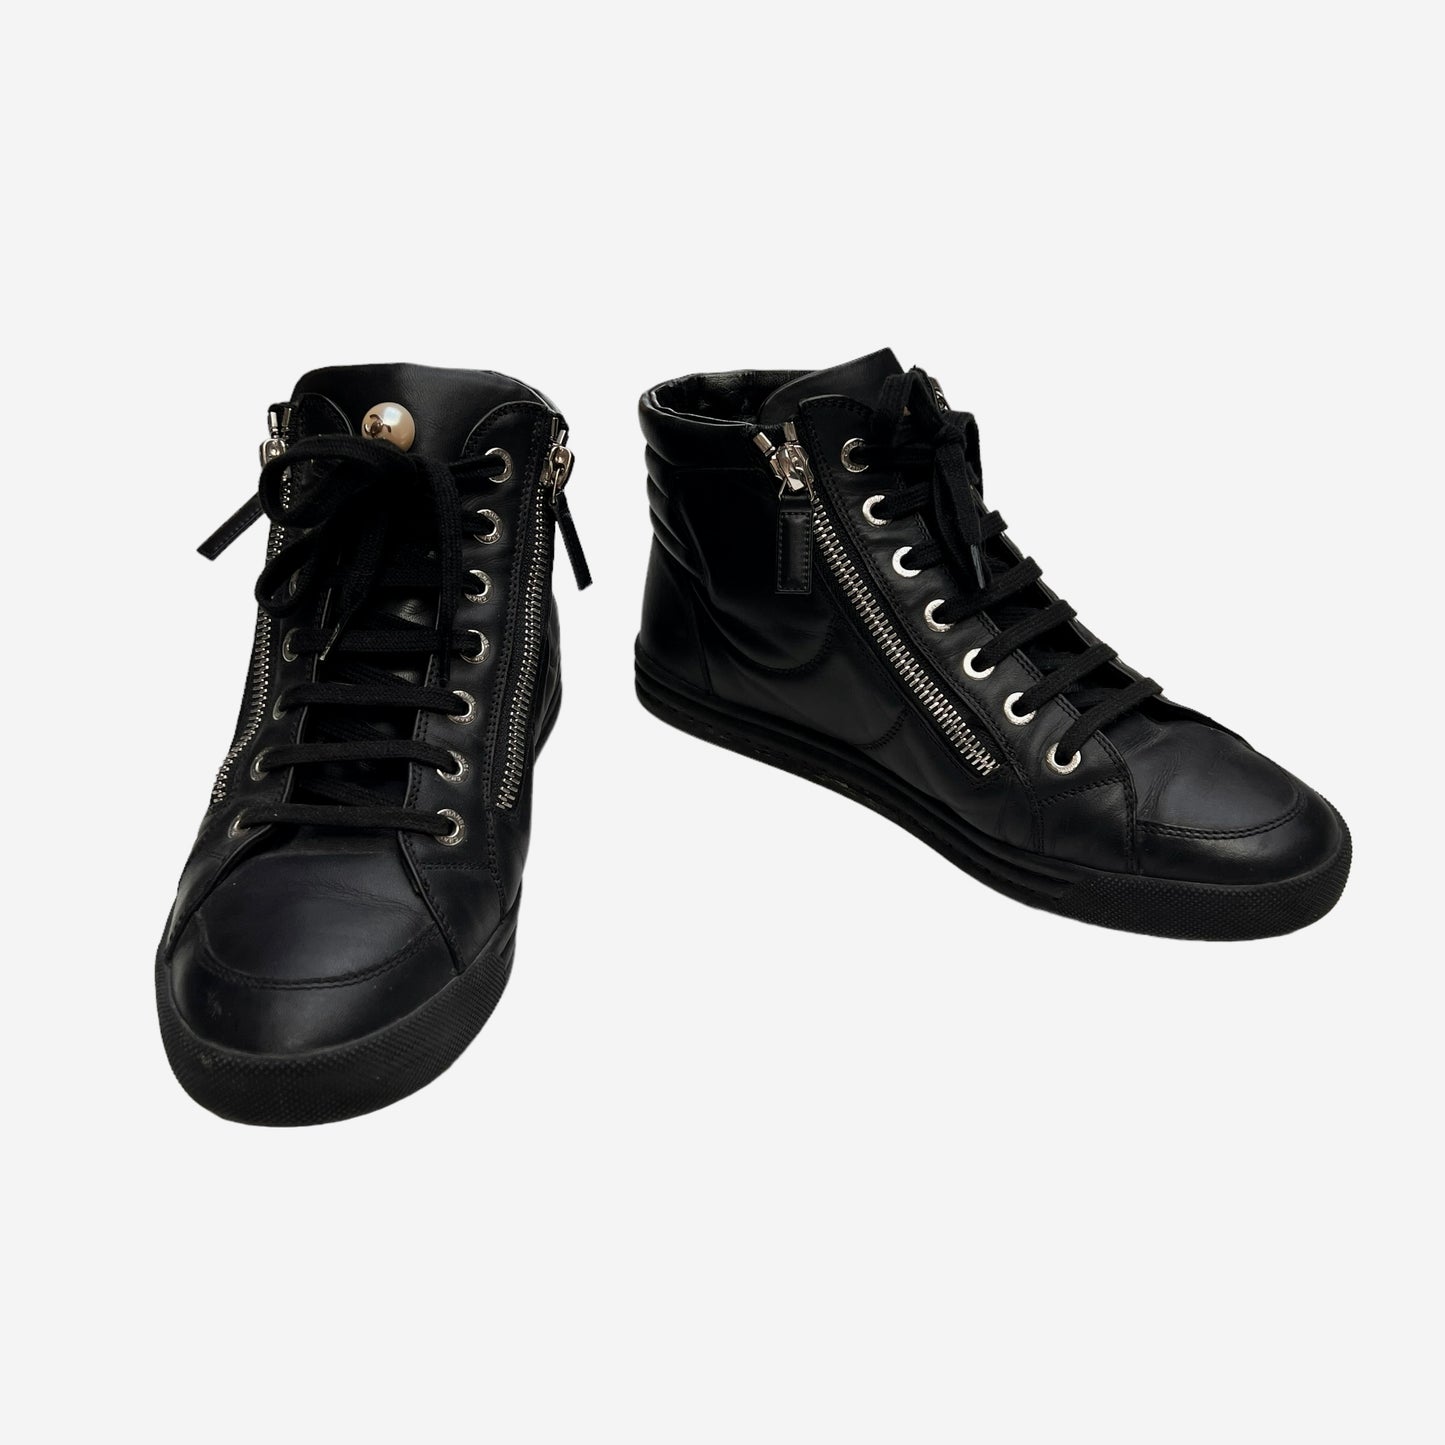 Black High Top Sneakers - 7